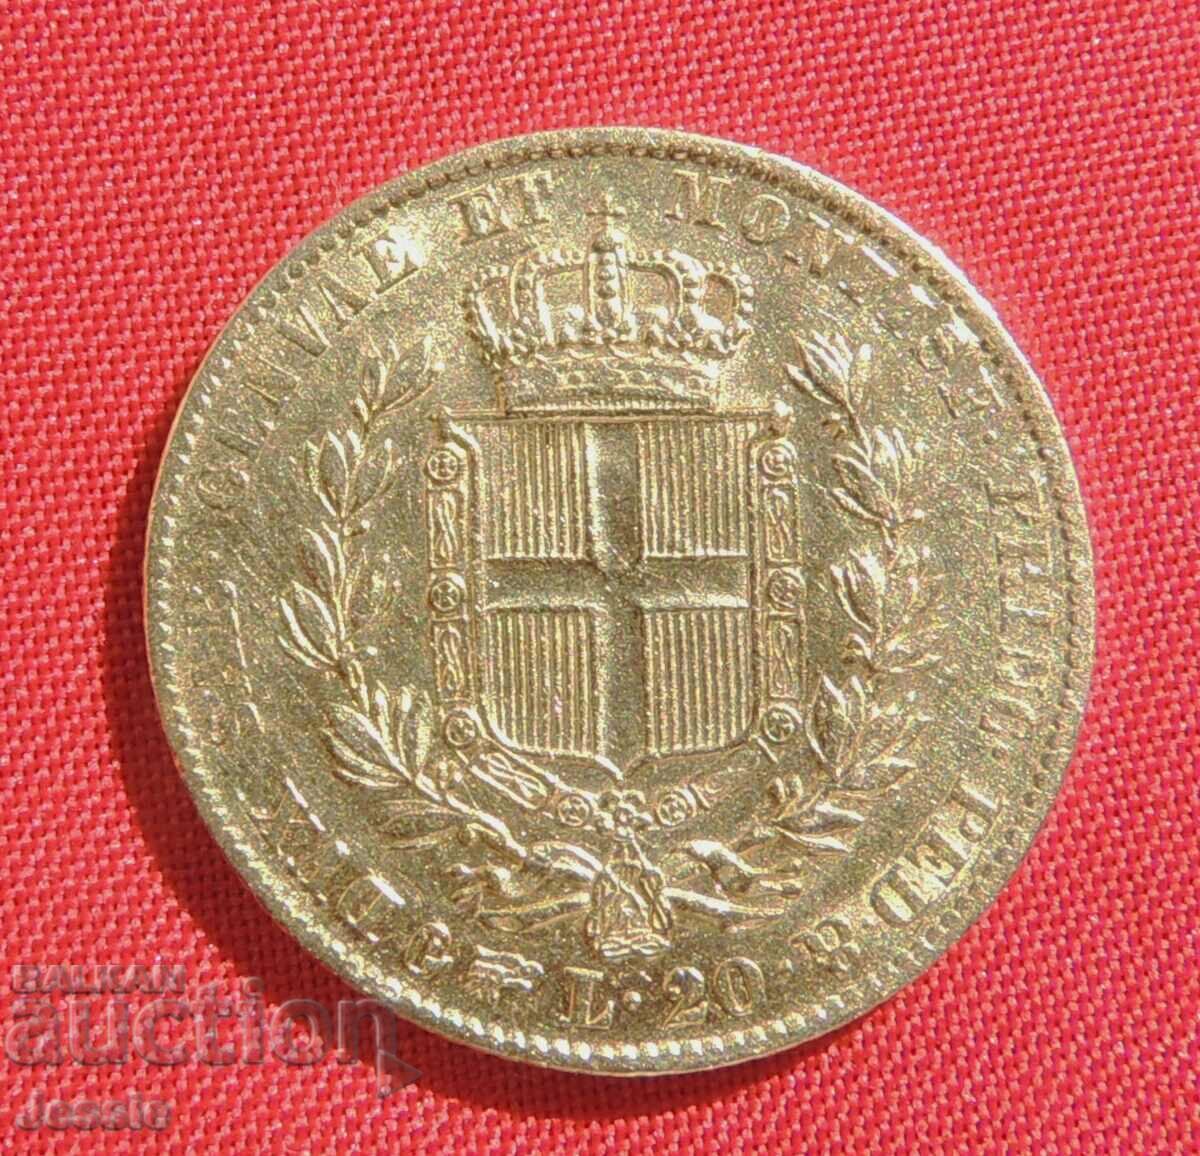 20 λίρες 1847 Ιταλία Τορίνο (20 λίρες Ιταλία) (χρυσός)